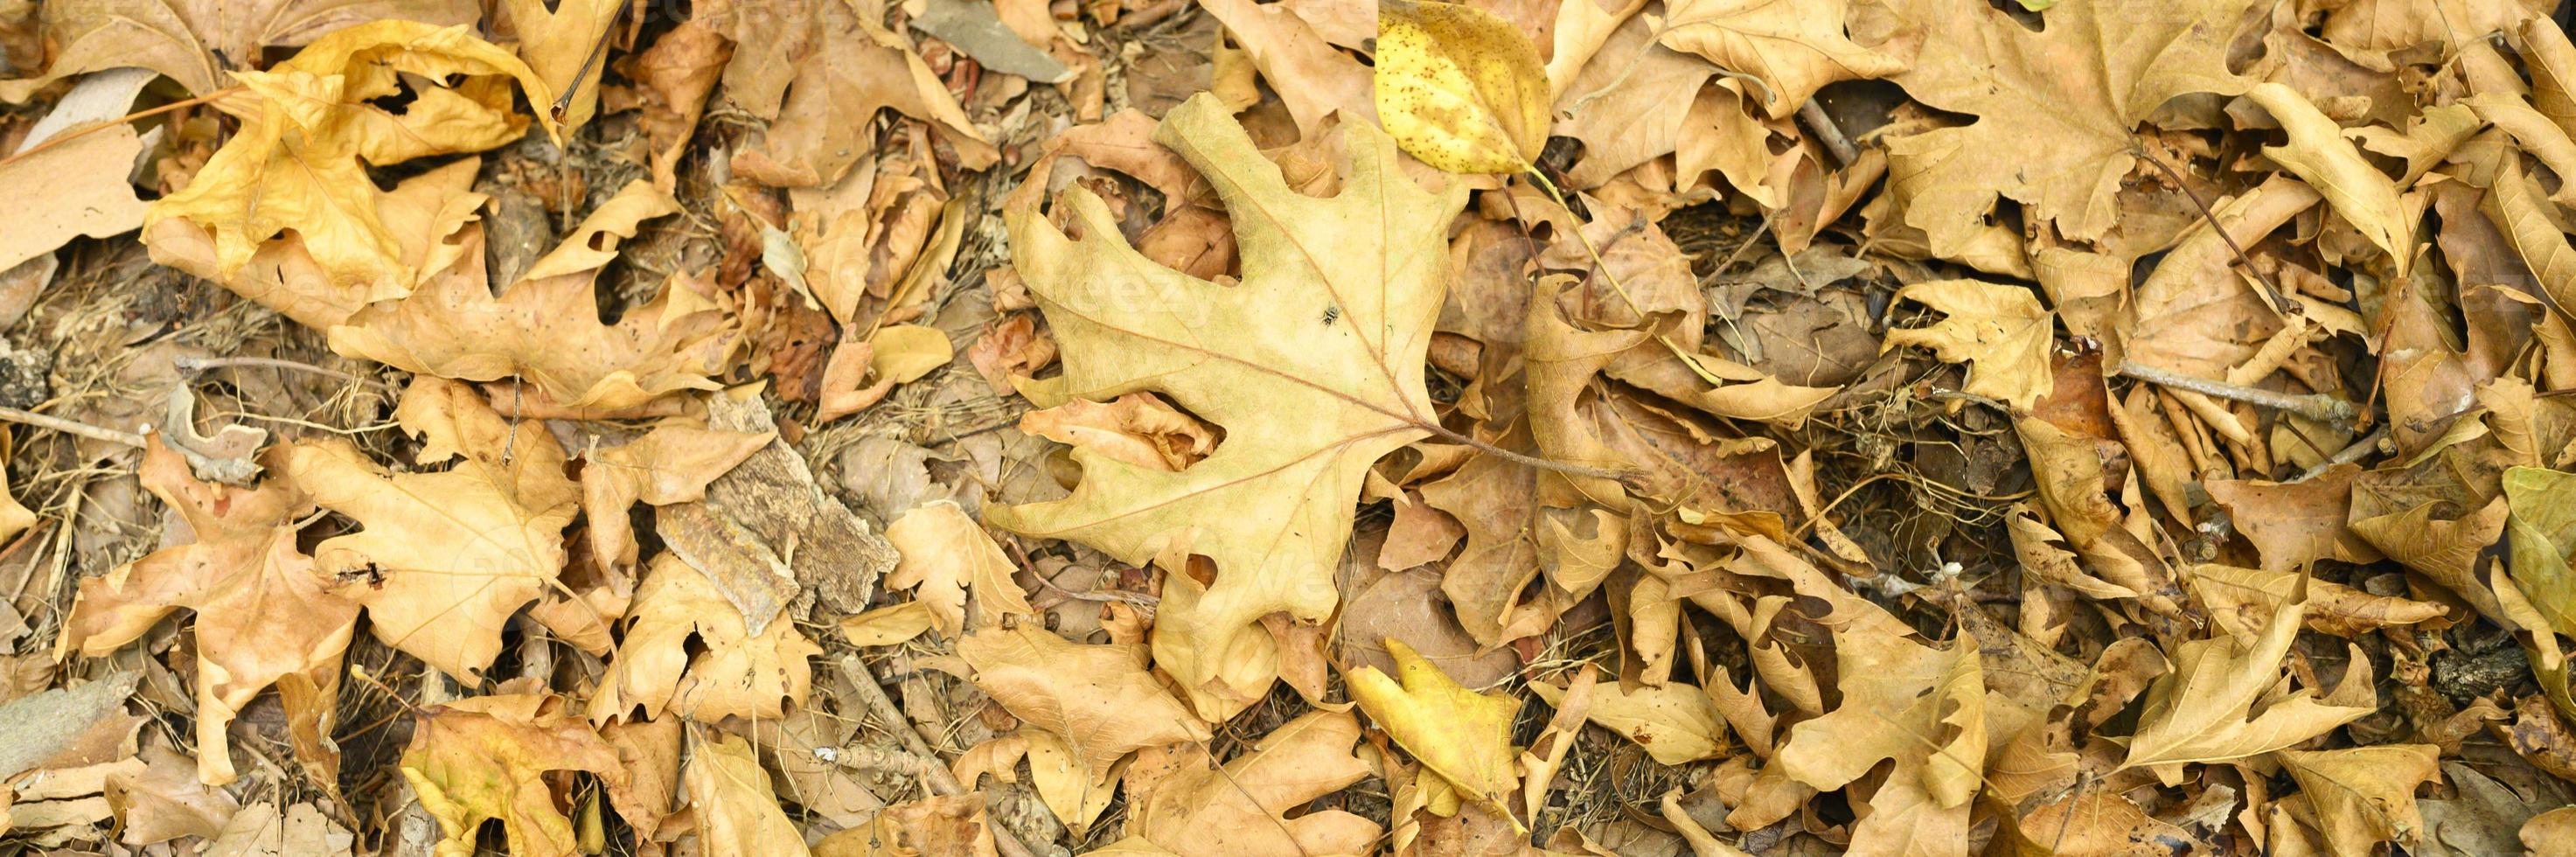 Fondo texturizado de hojas de otoño caídas marchitas secas de árboles de arce foto